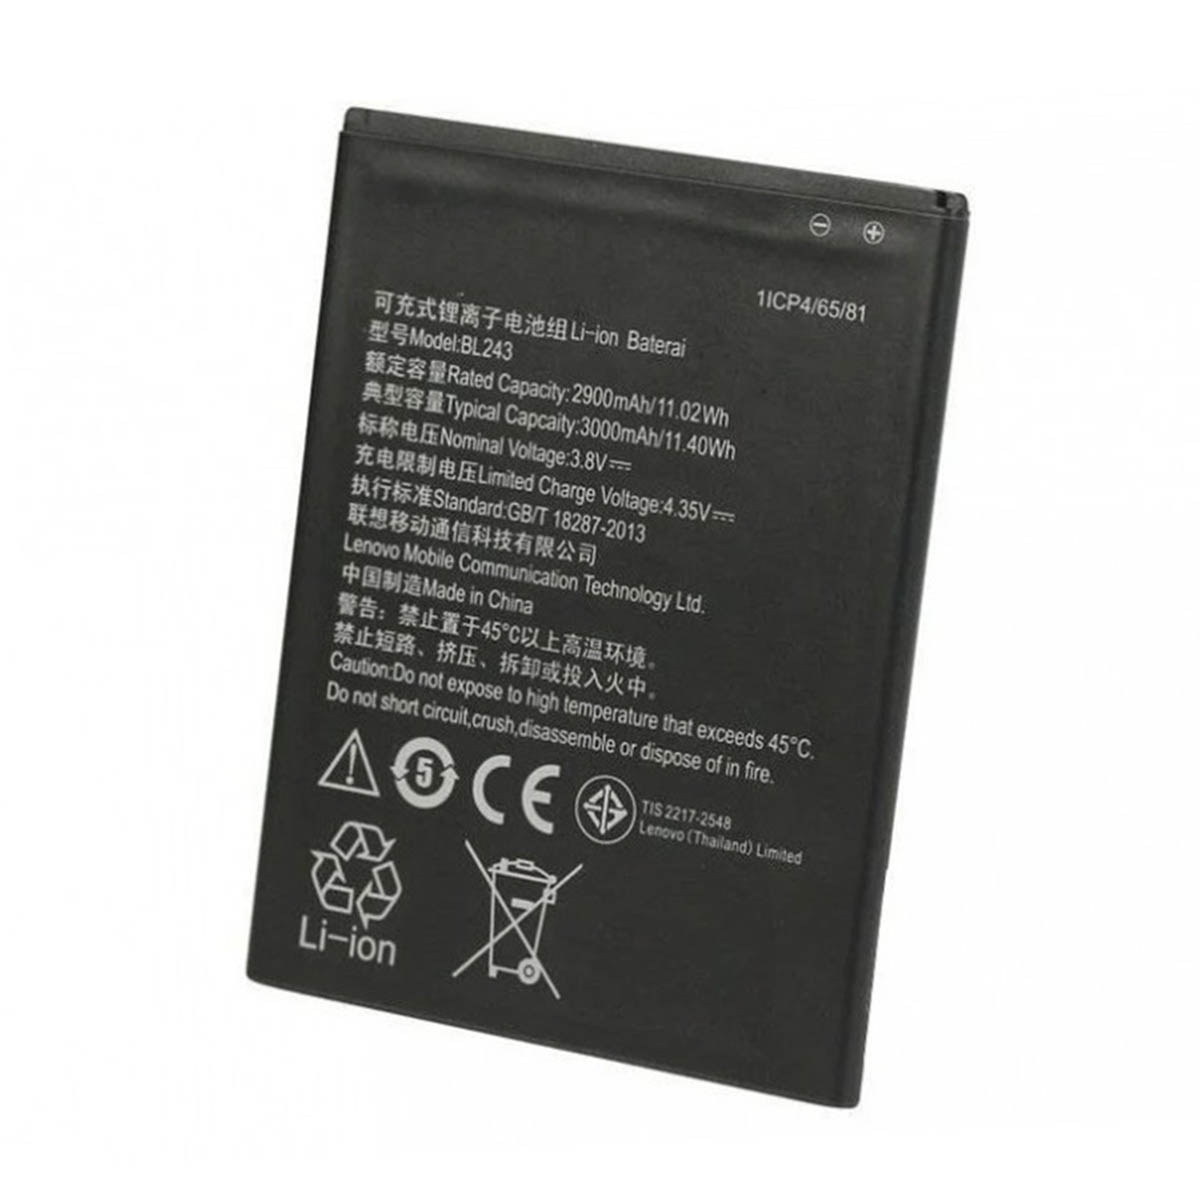 АКБ (Аккумулятор) BL243 для Lenovo A7000, K3 note, 2900mAh